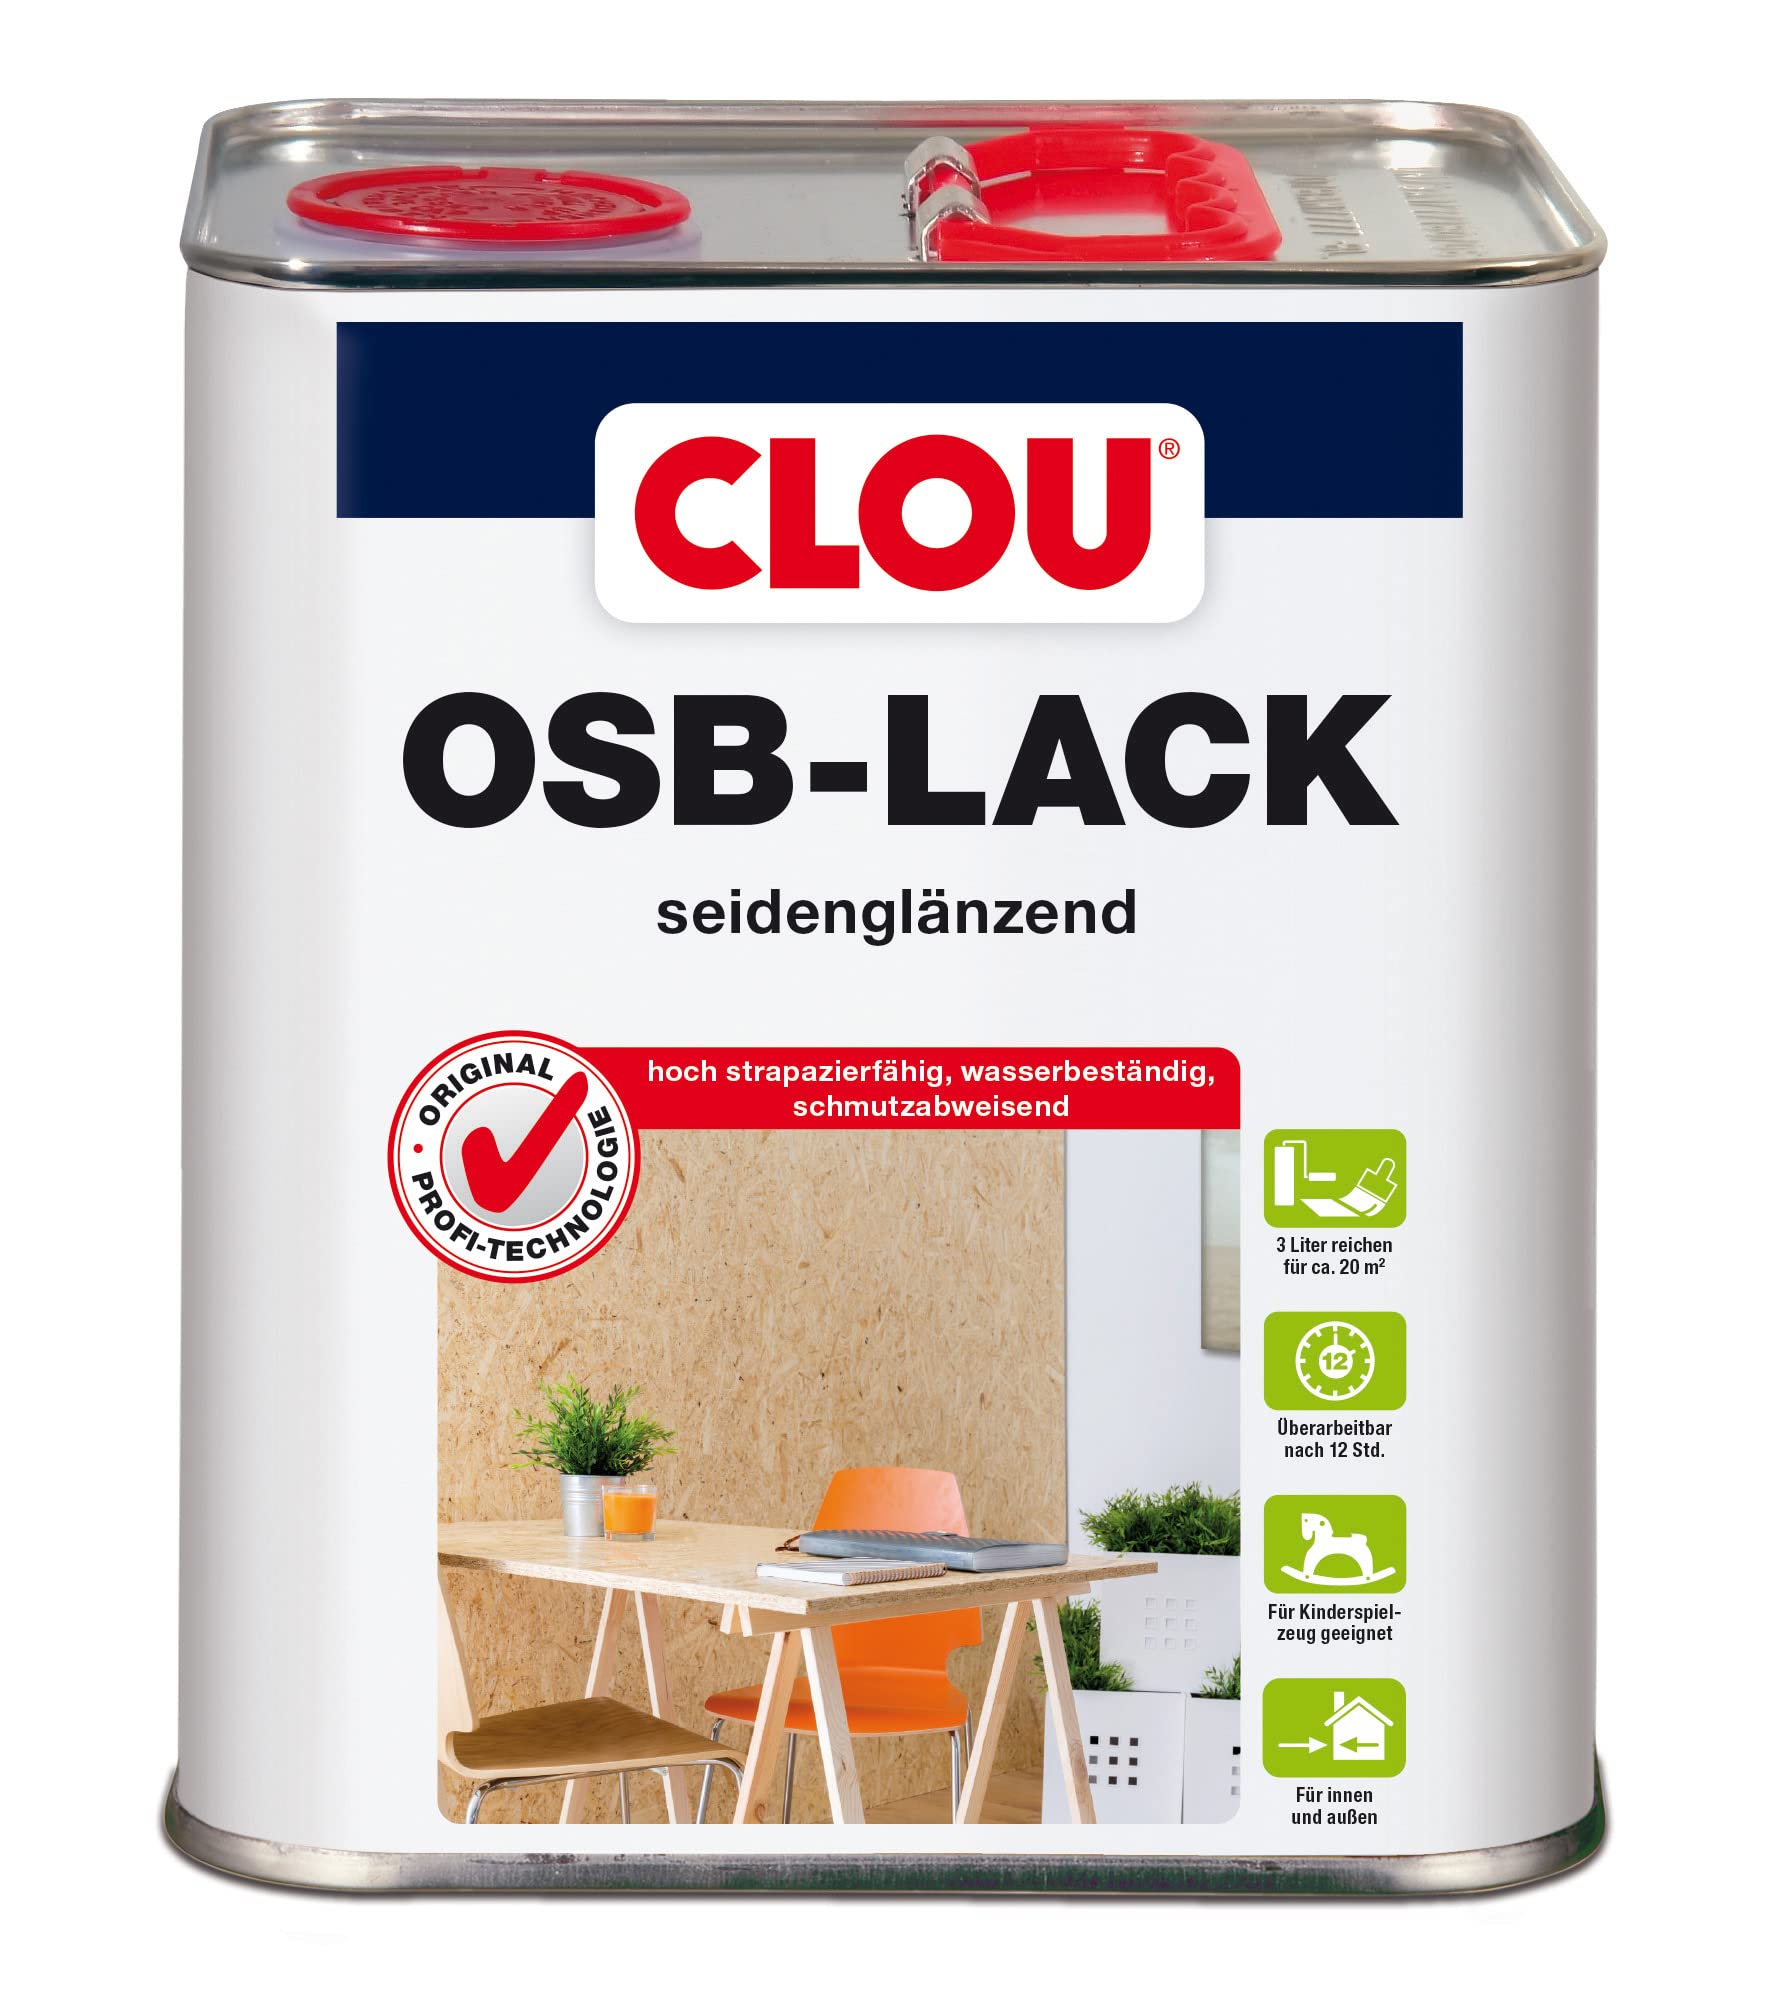 CLOU OSB Lack: Seidenglänzender Holzlack zur Versiegelung von OSB-Platten, farbloser Parkettlack, wasserabweisend, 3L